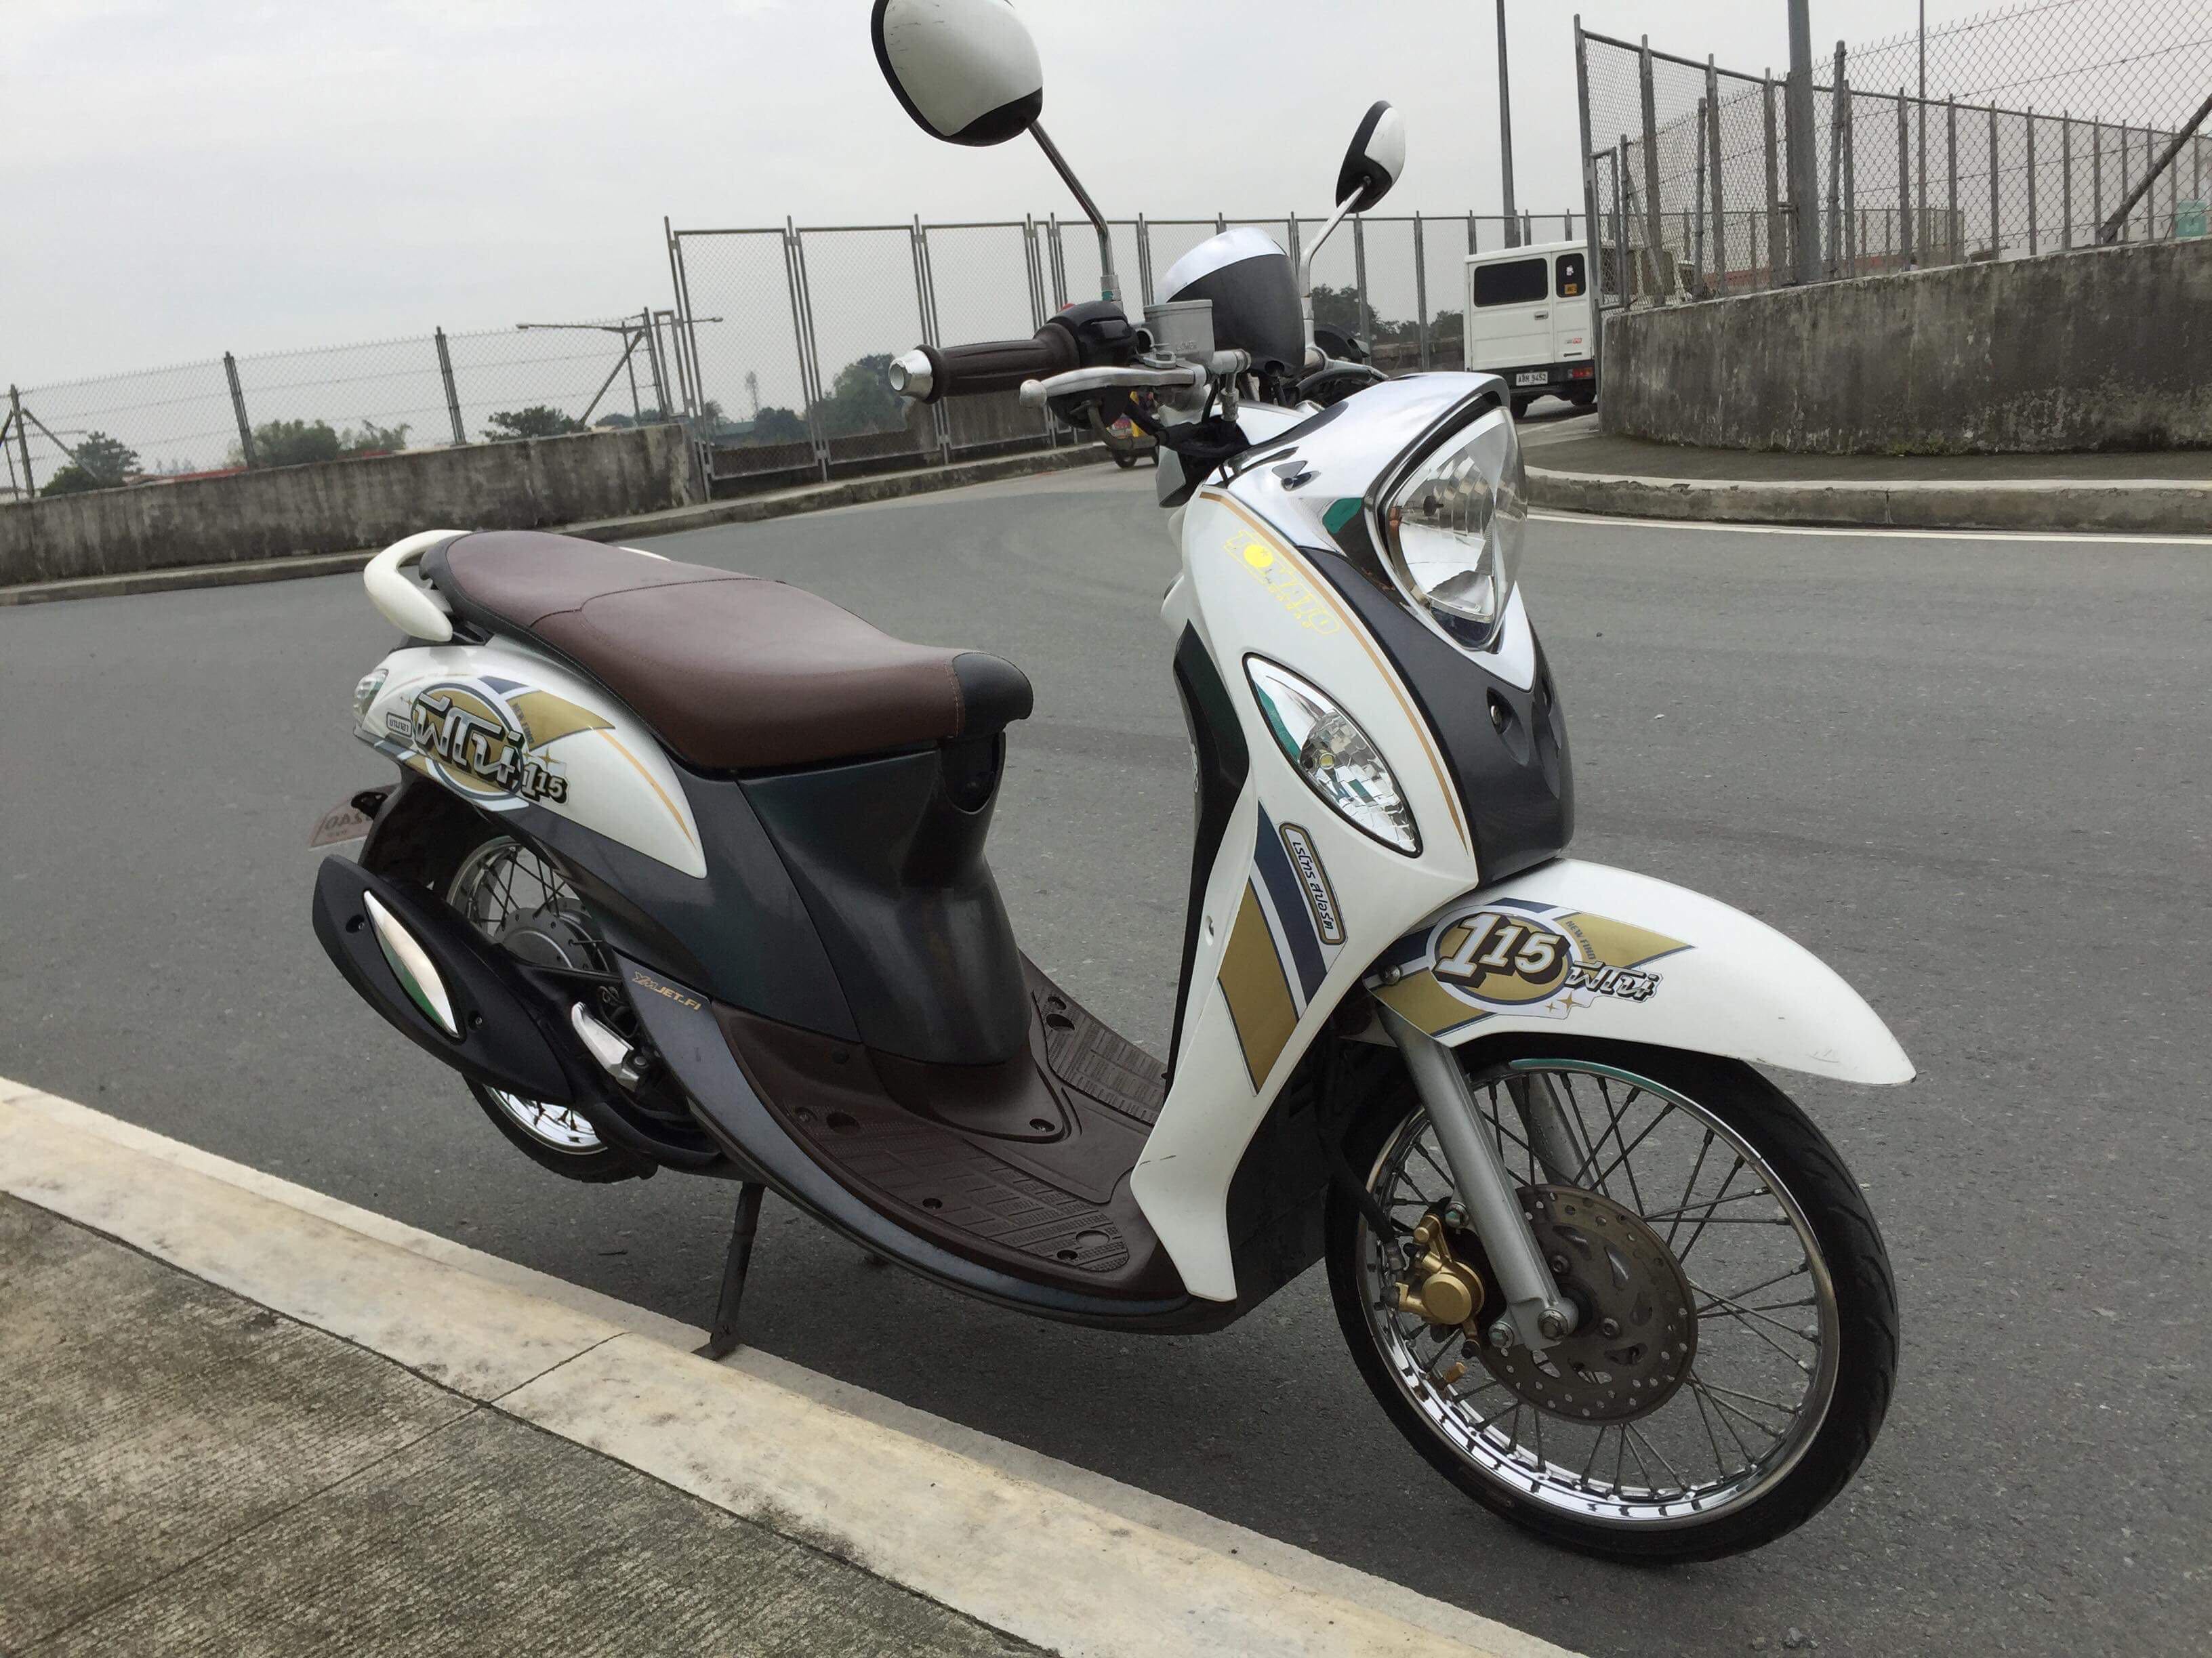 Yamaha Fino nhập khẩu giá từ 36 triệu cạnh tranh xe lắp ráp trong nước